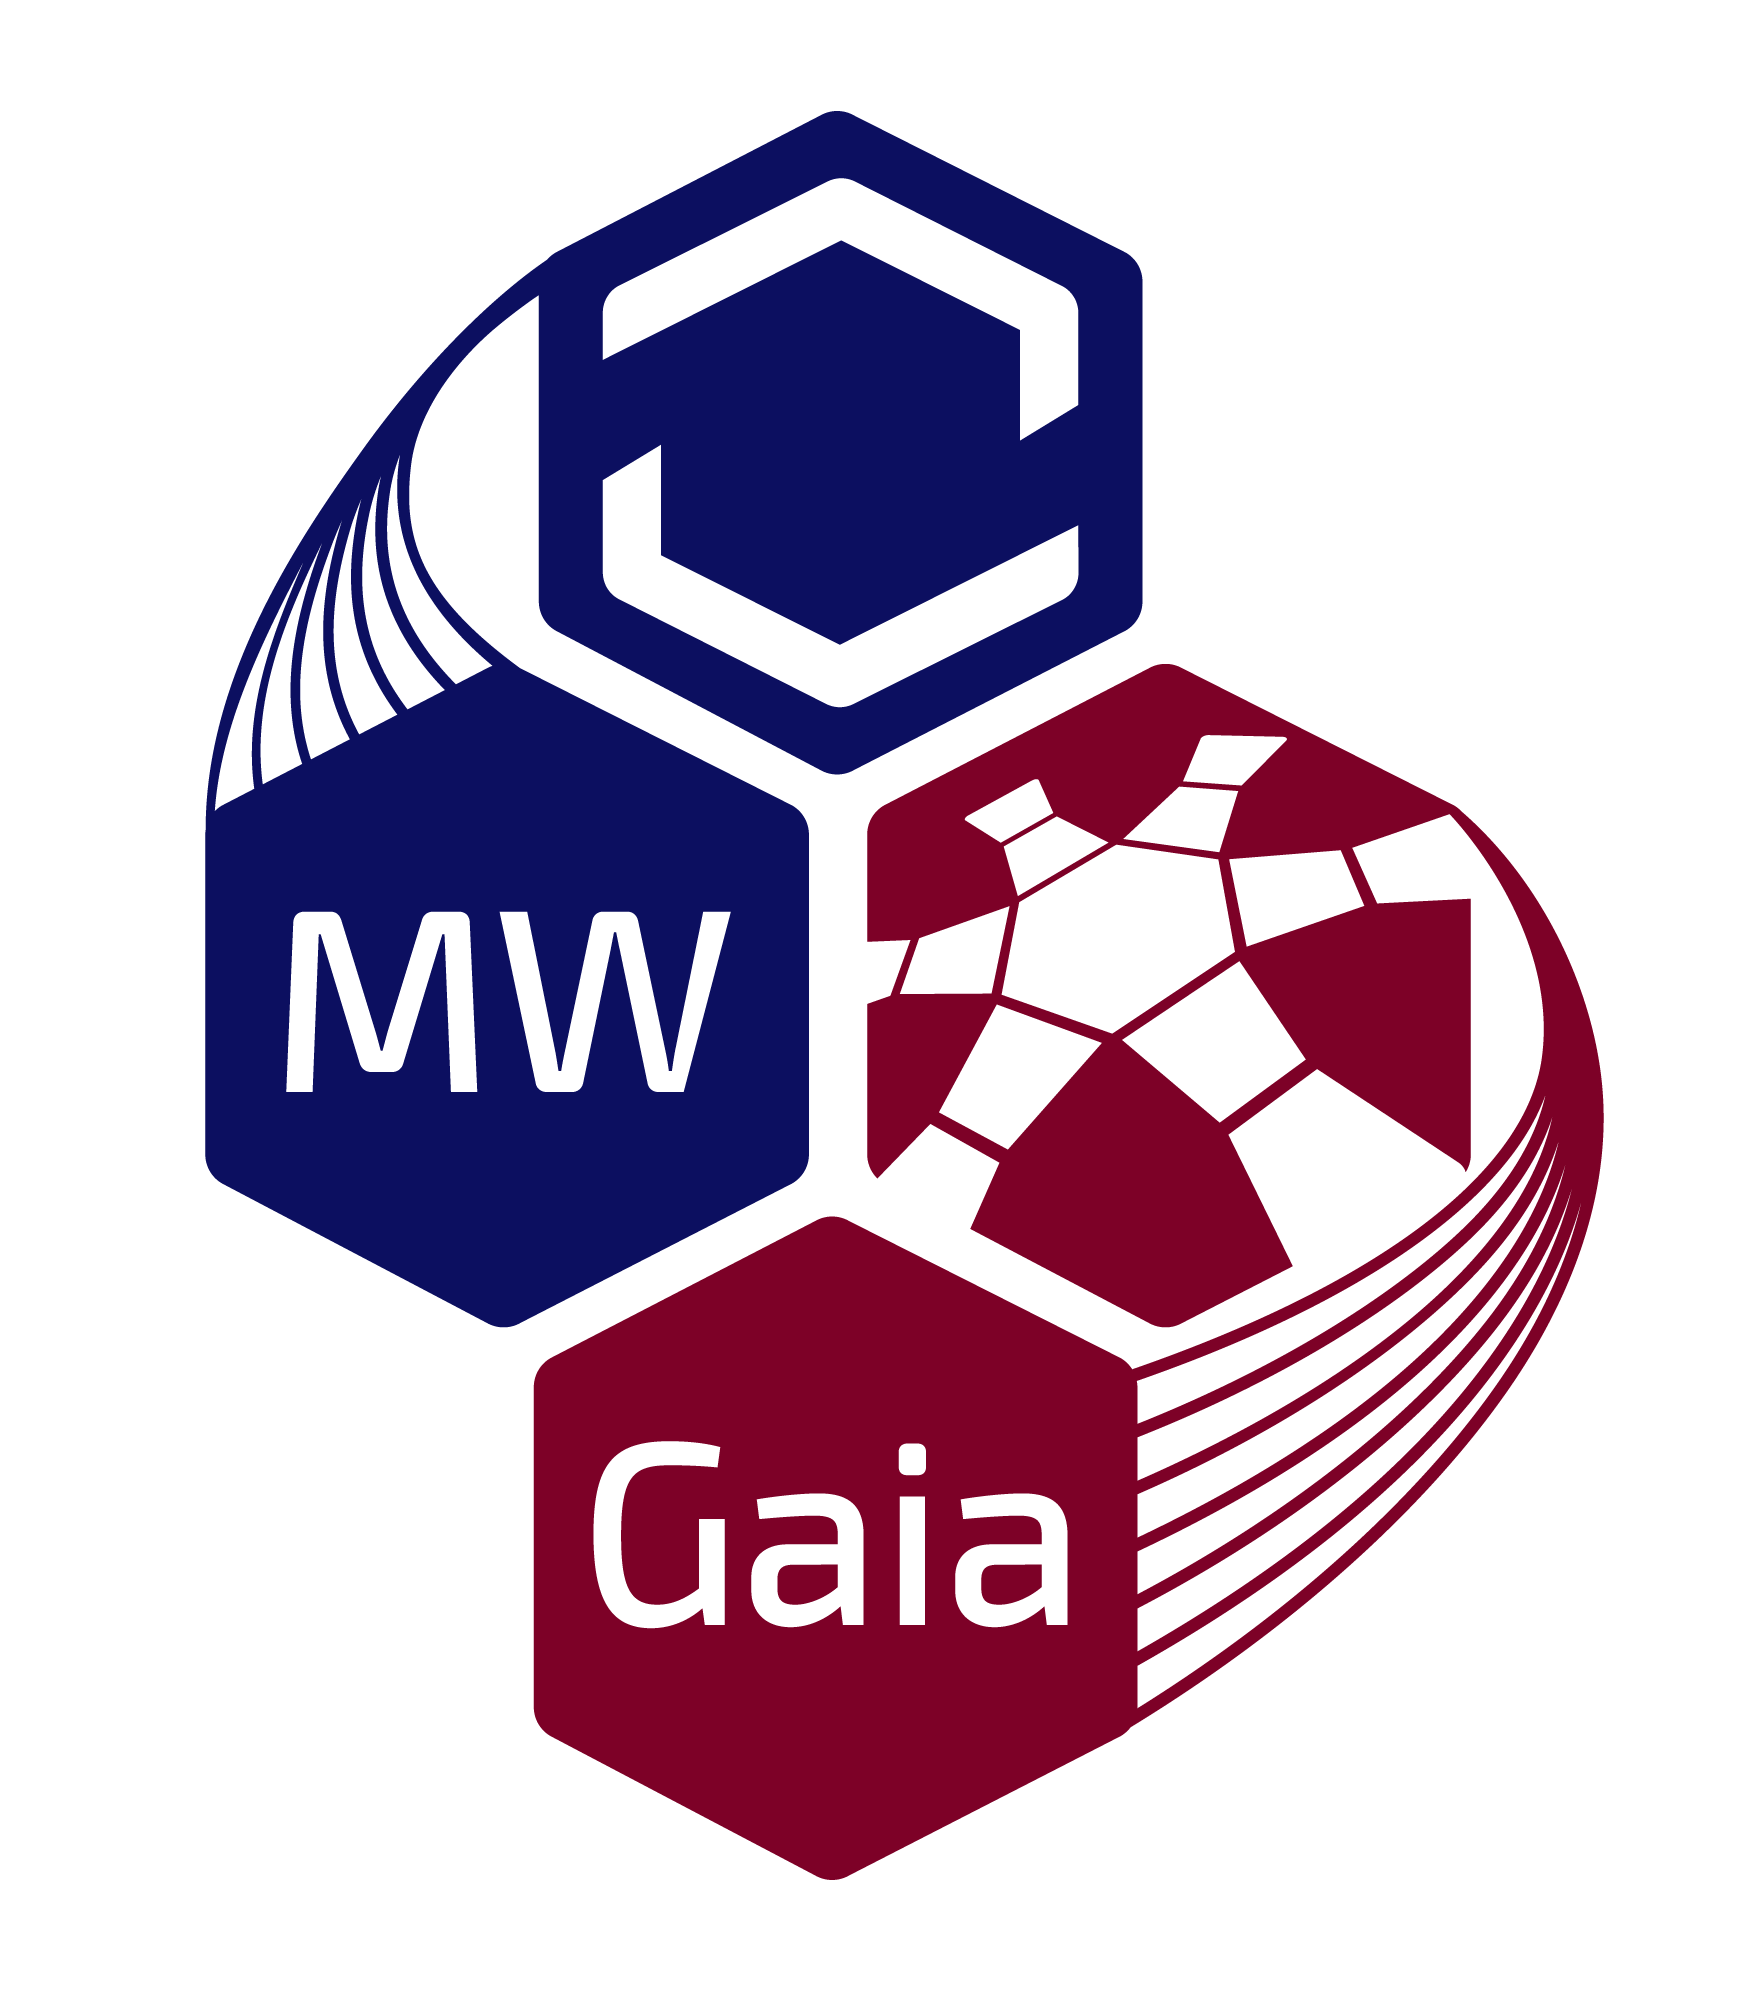 MW-Gaia logo